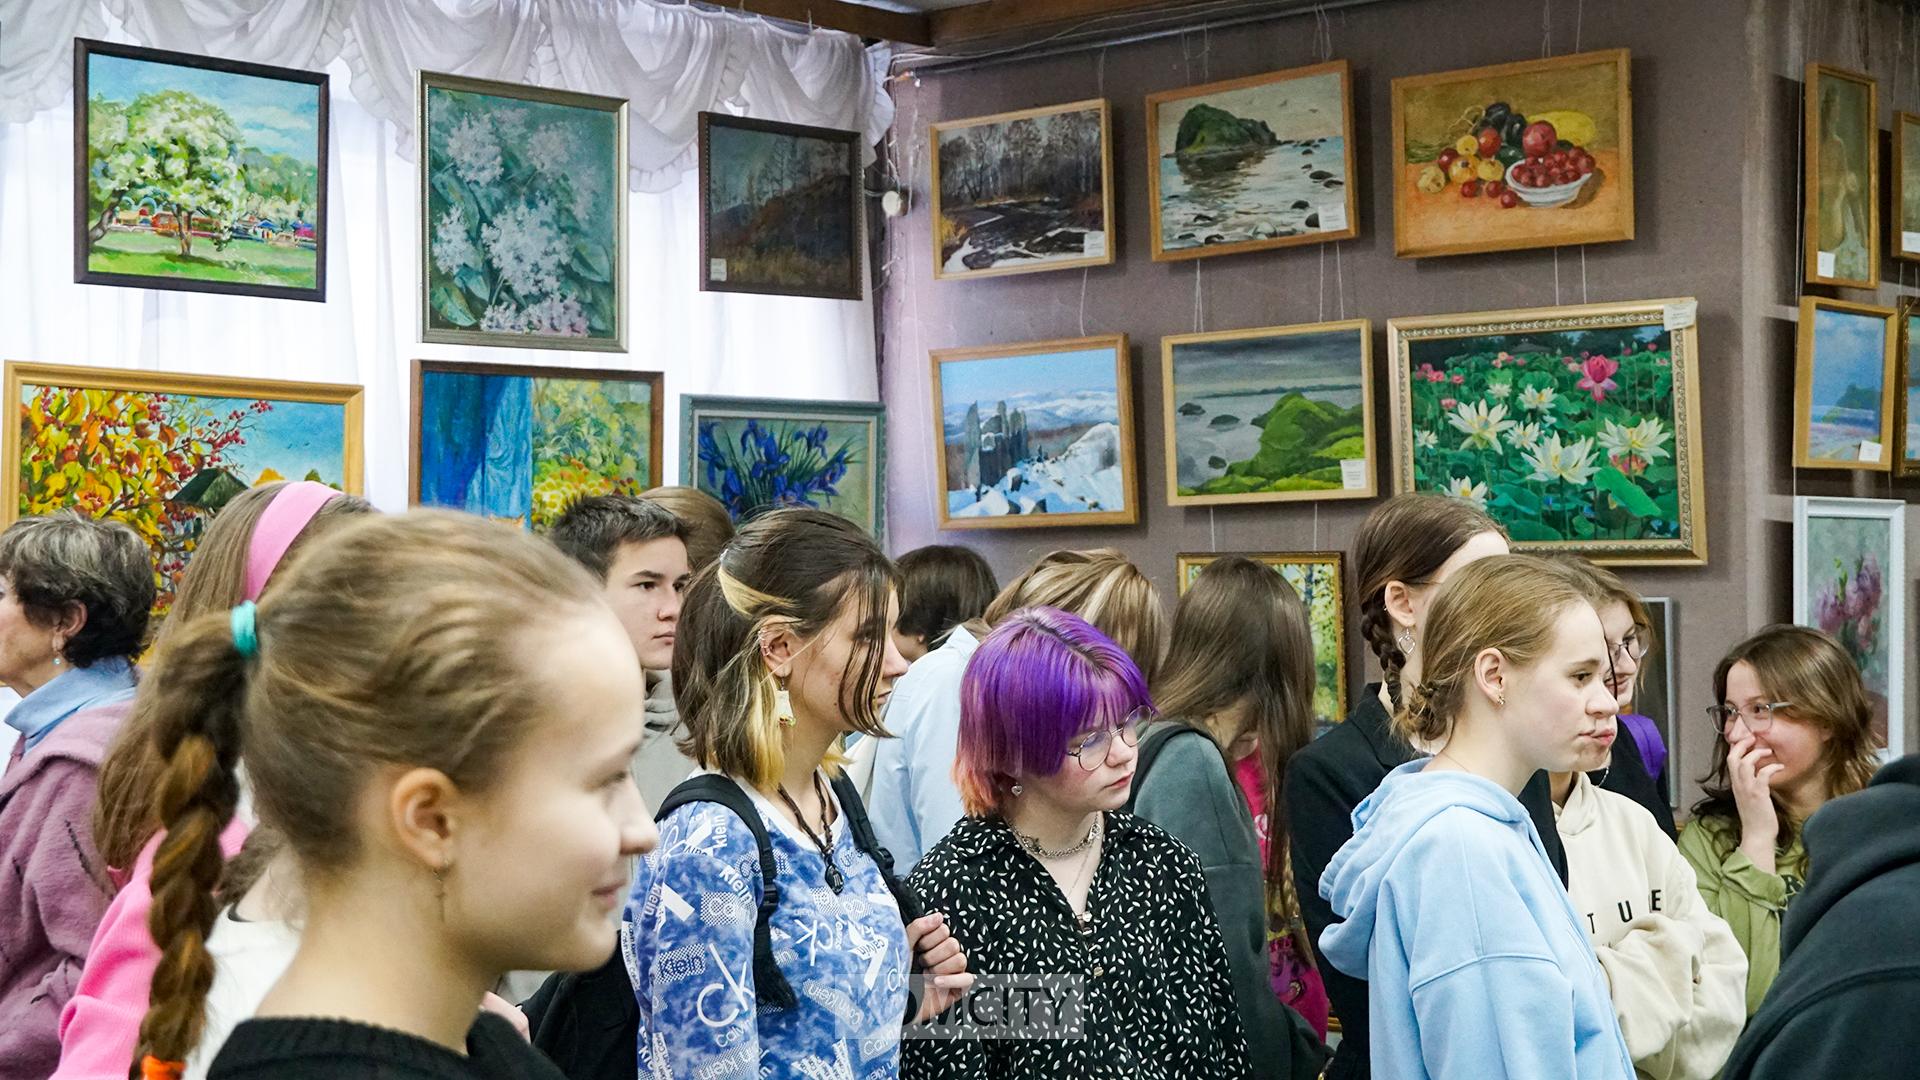 Пейзажи Камчатки можно увидеть на персональной выставке Вячеслава Белых в Выставочном зале Союза художников